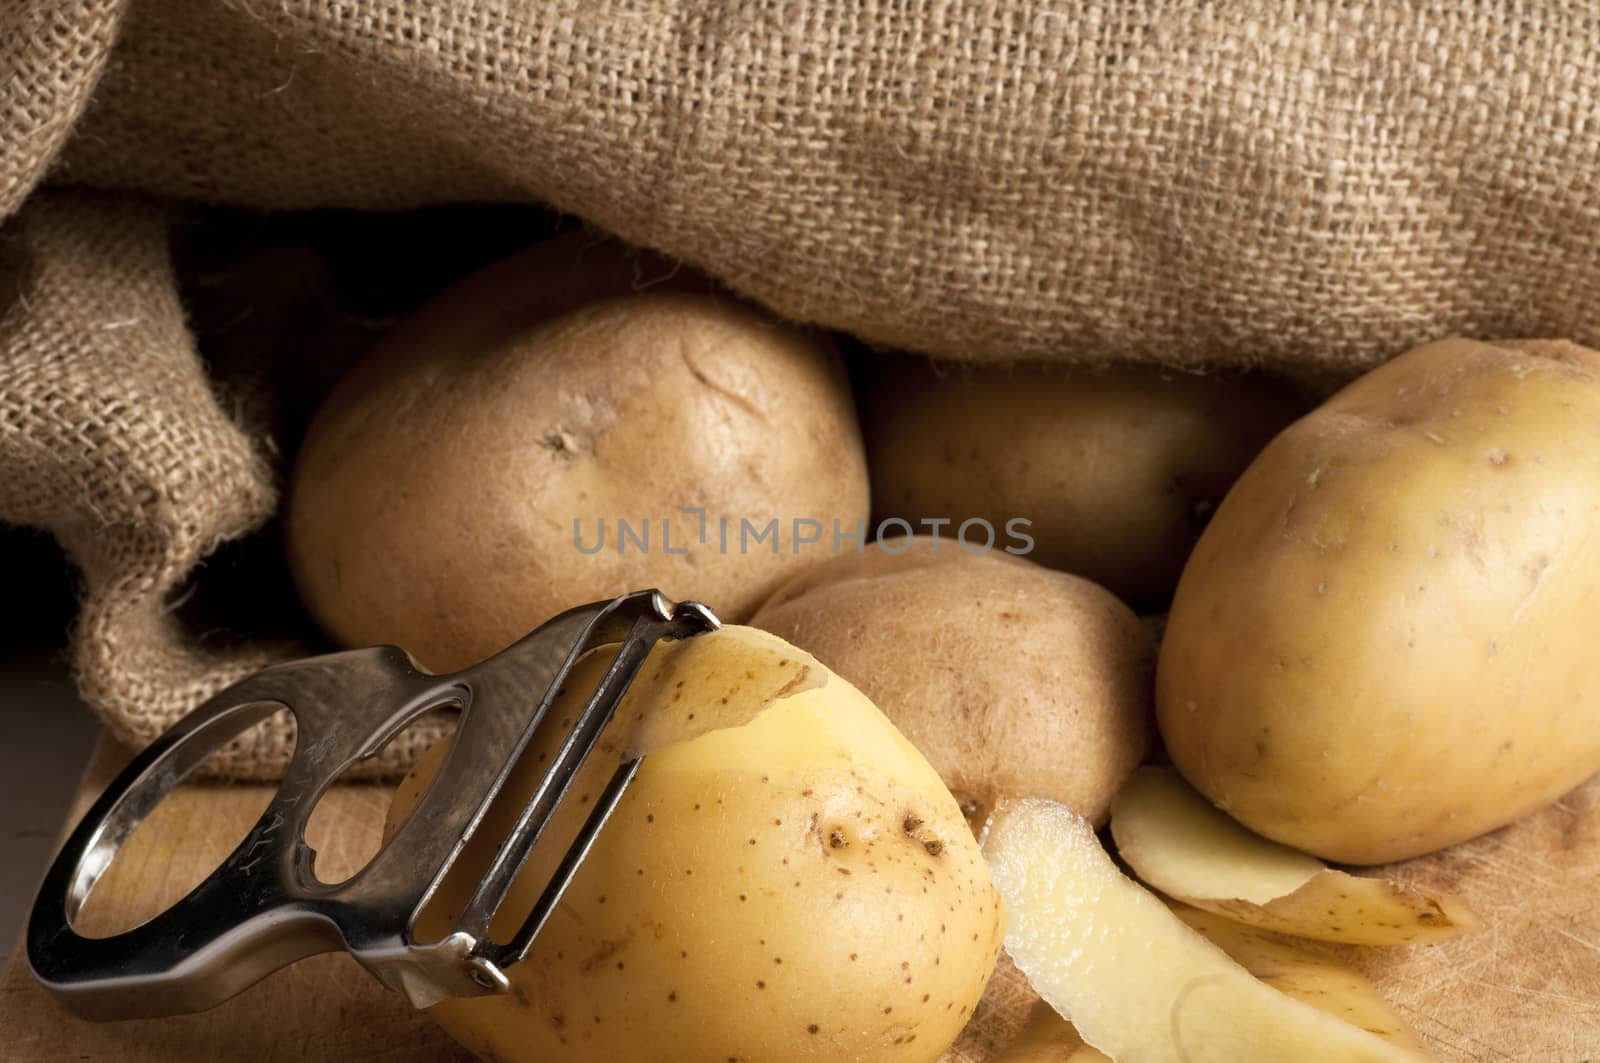 potatoes outside a jute sack